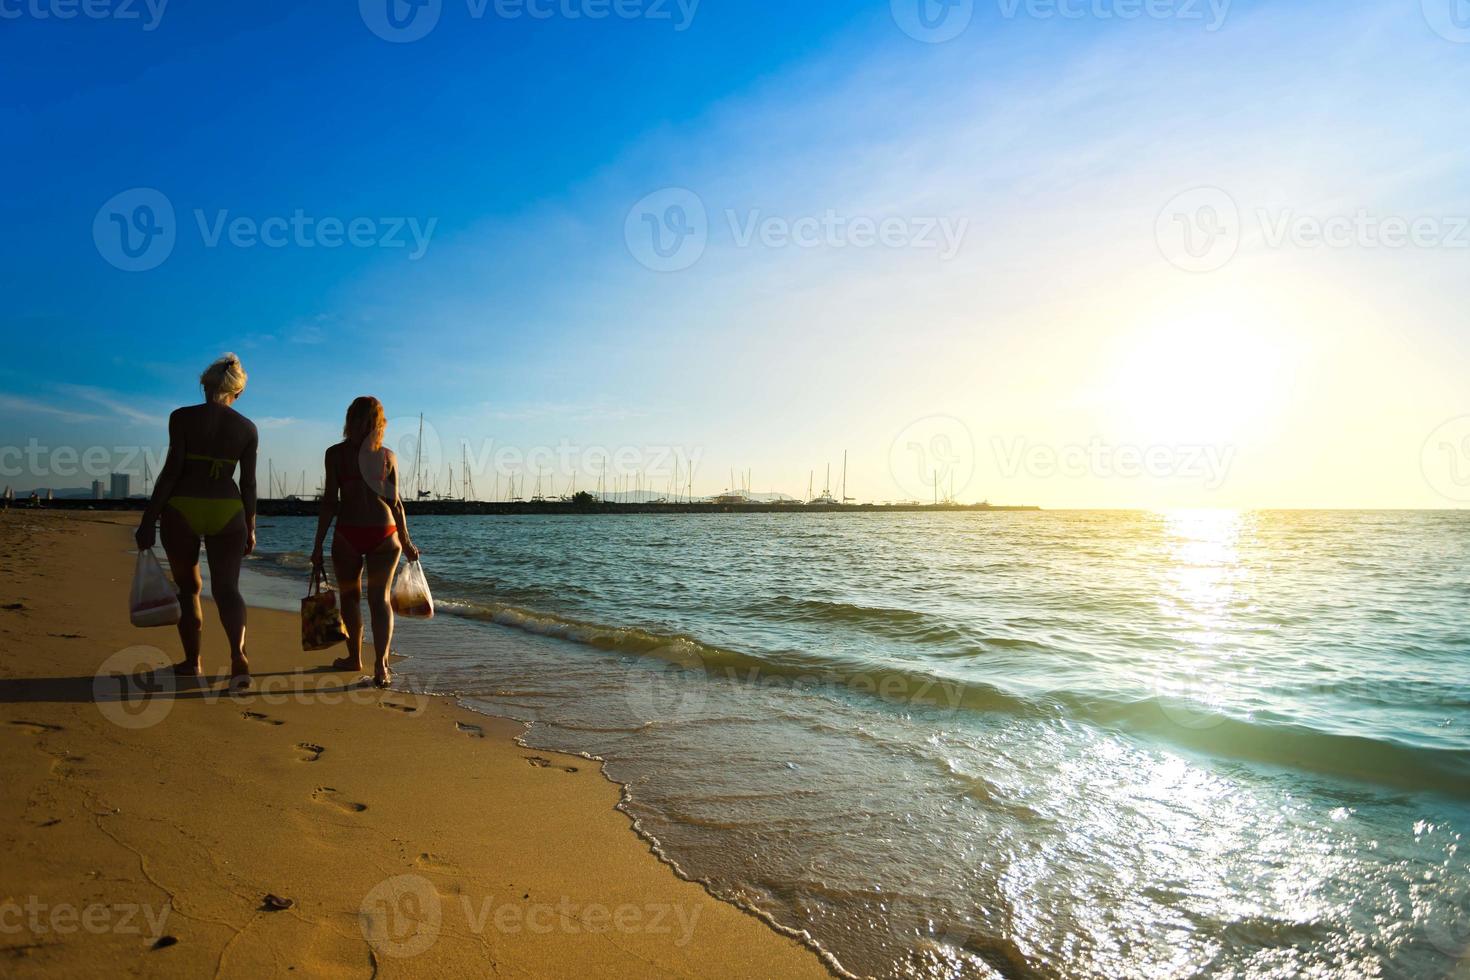 turisti stranieri non identificati indossano bikini camminano sulla spiaggia di sabbia pattaya tailandia. foto